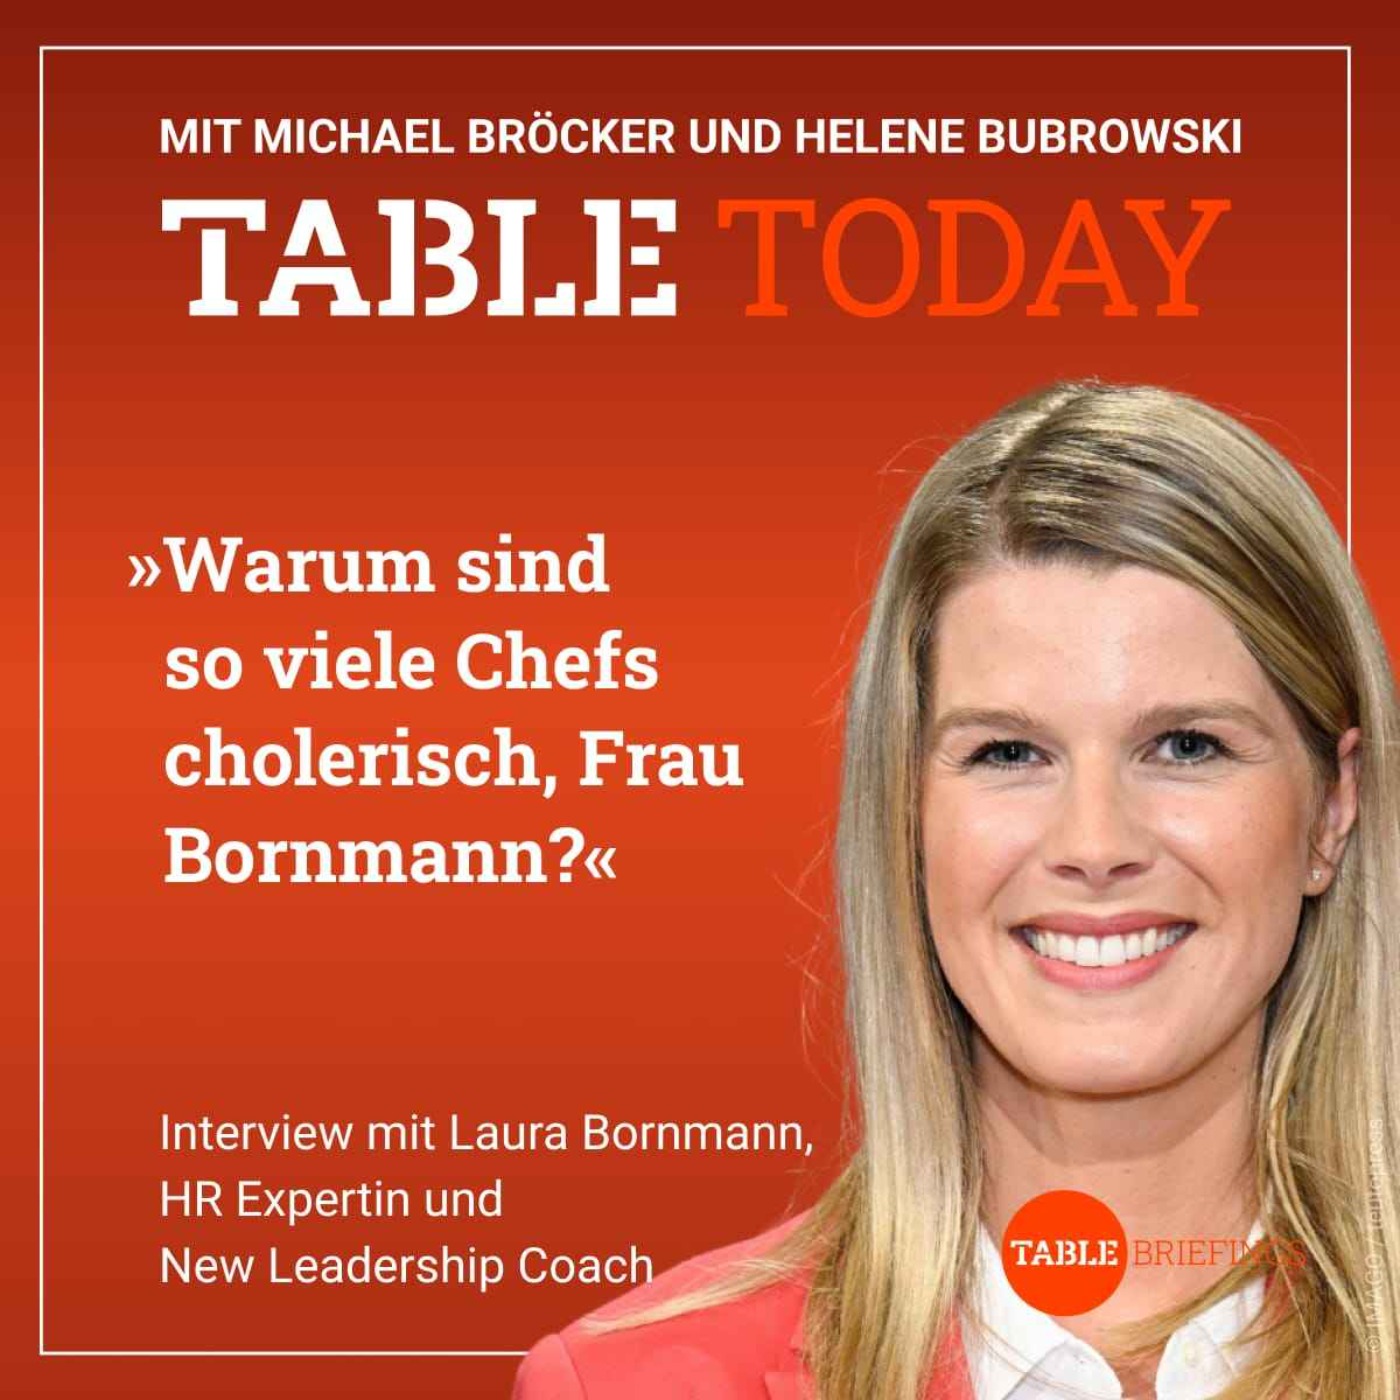 Warum sind so viele Chefs cholerisch, Frau Bornmann?